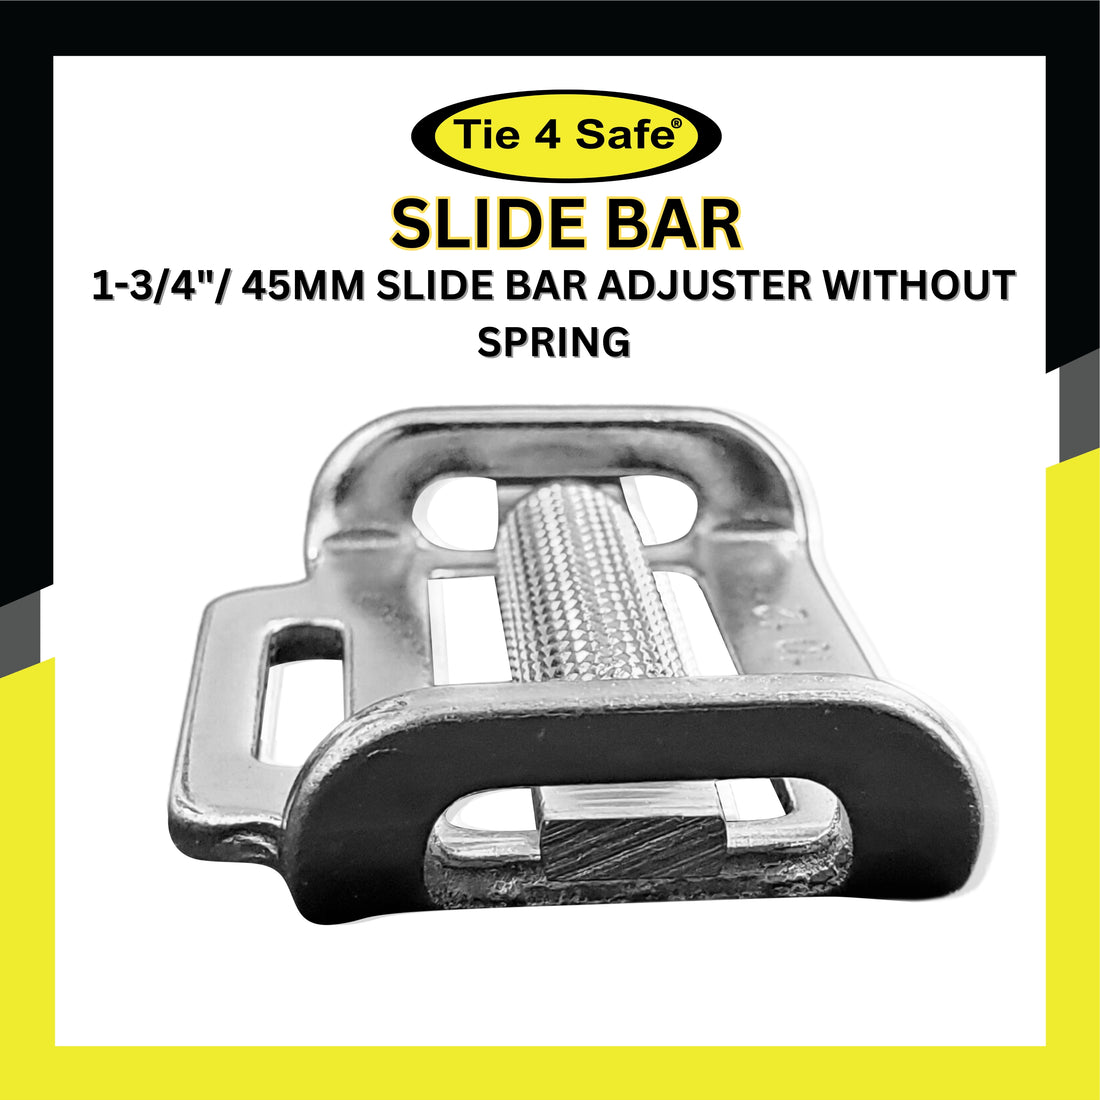 1-3/4"/ 45mm Slide Bar